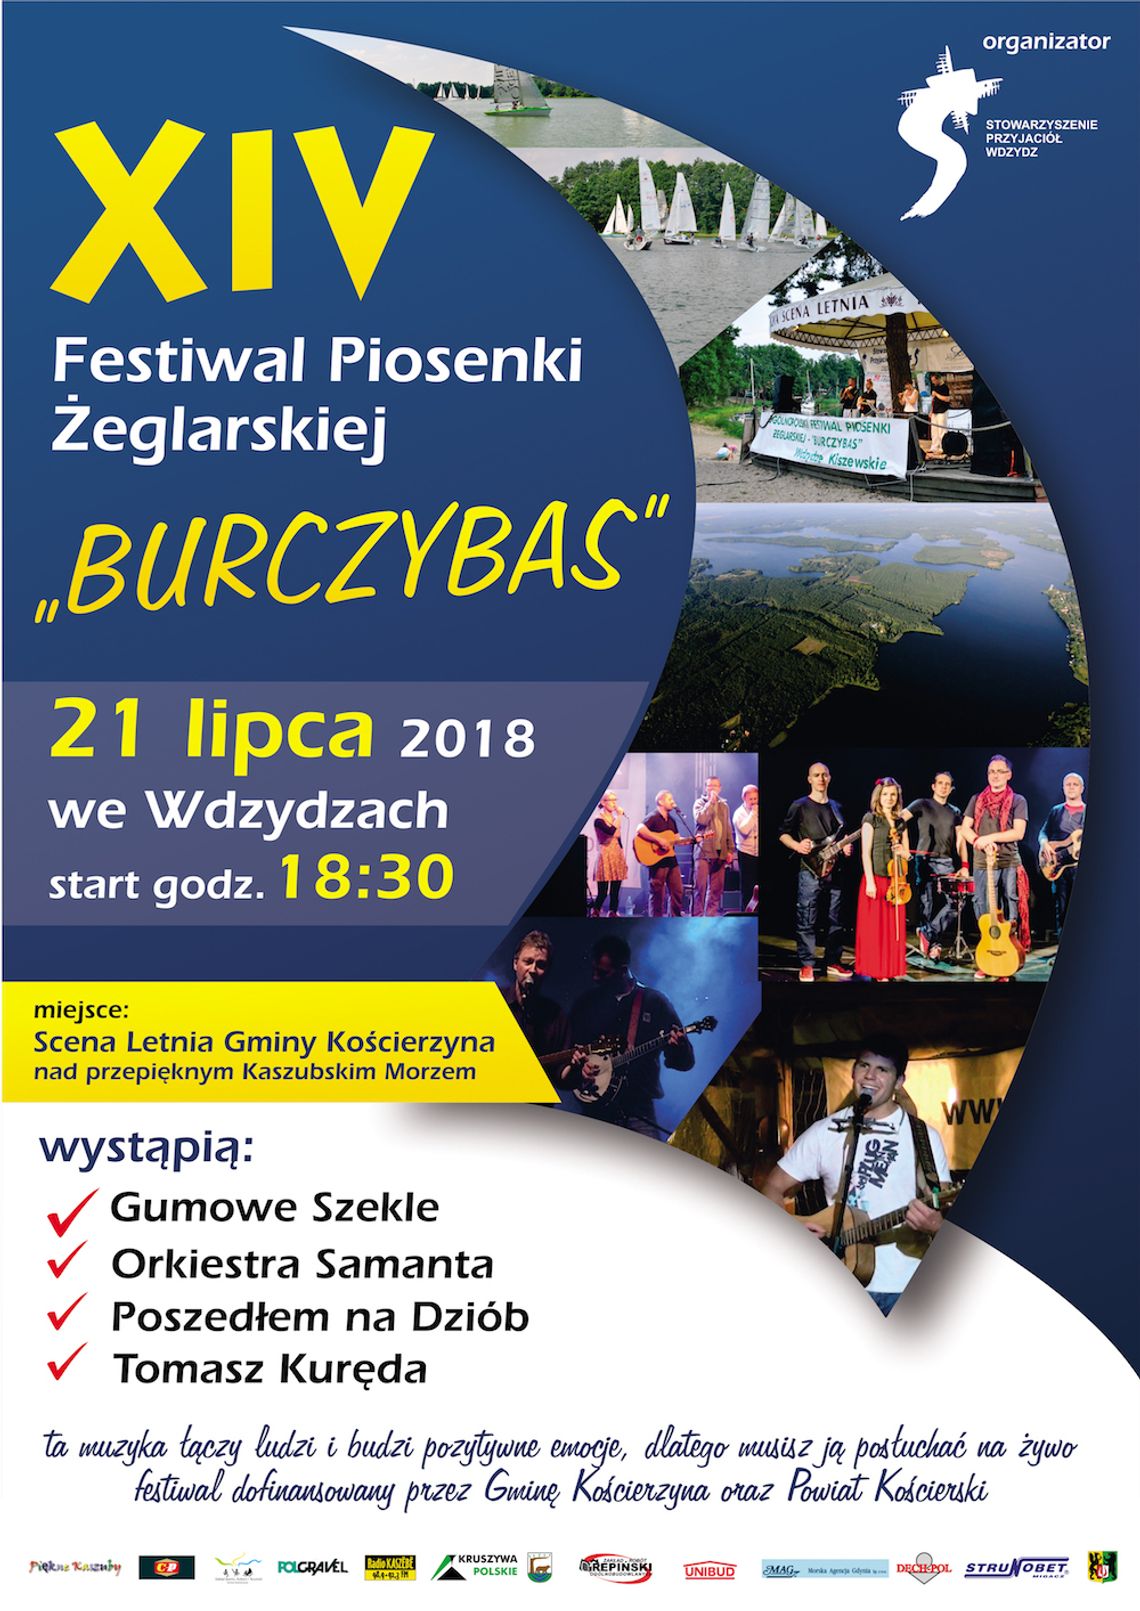 XIV Festiwal Piosenki Żeglarskiej "BURCZYBAS"